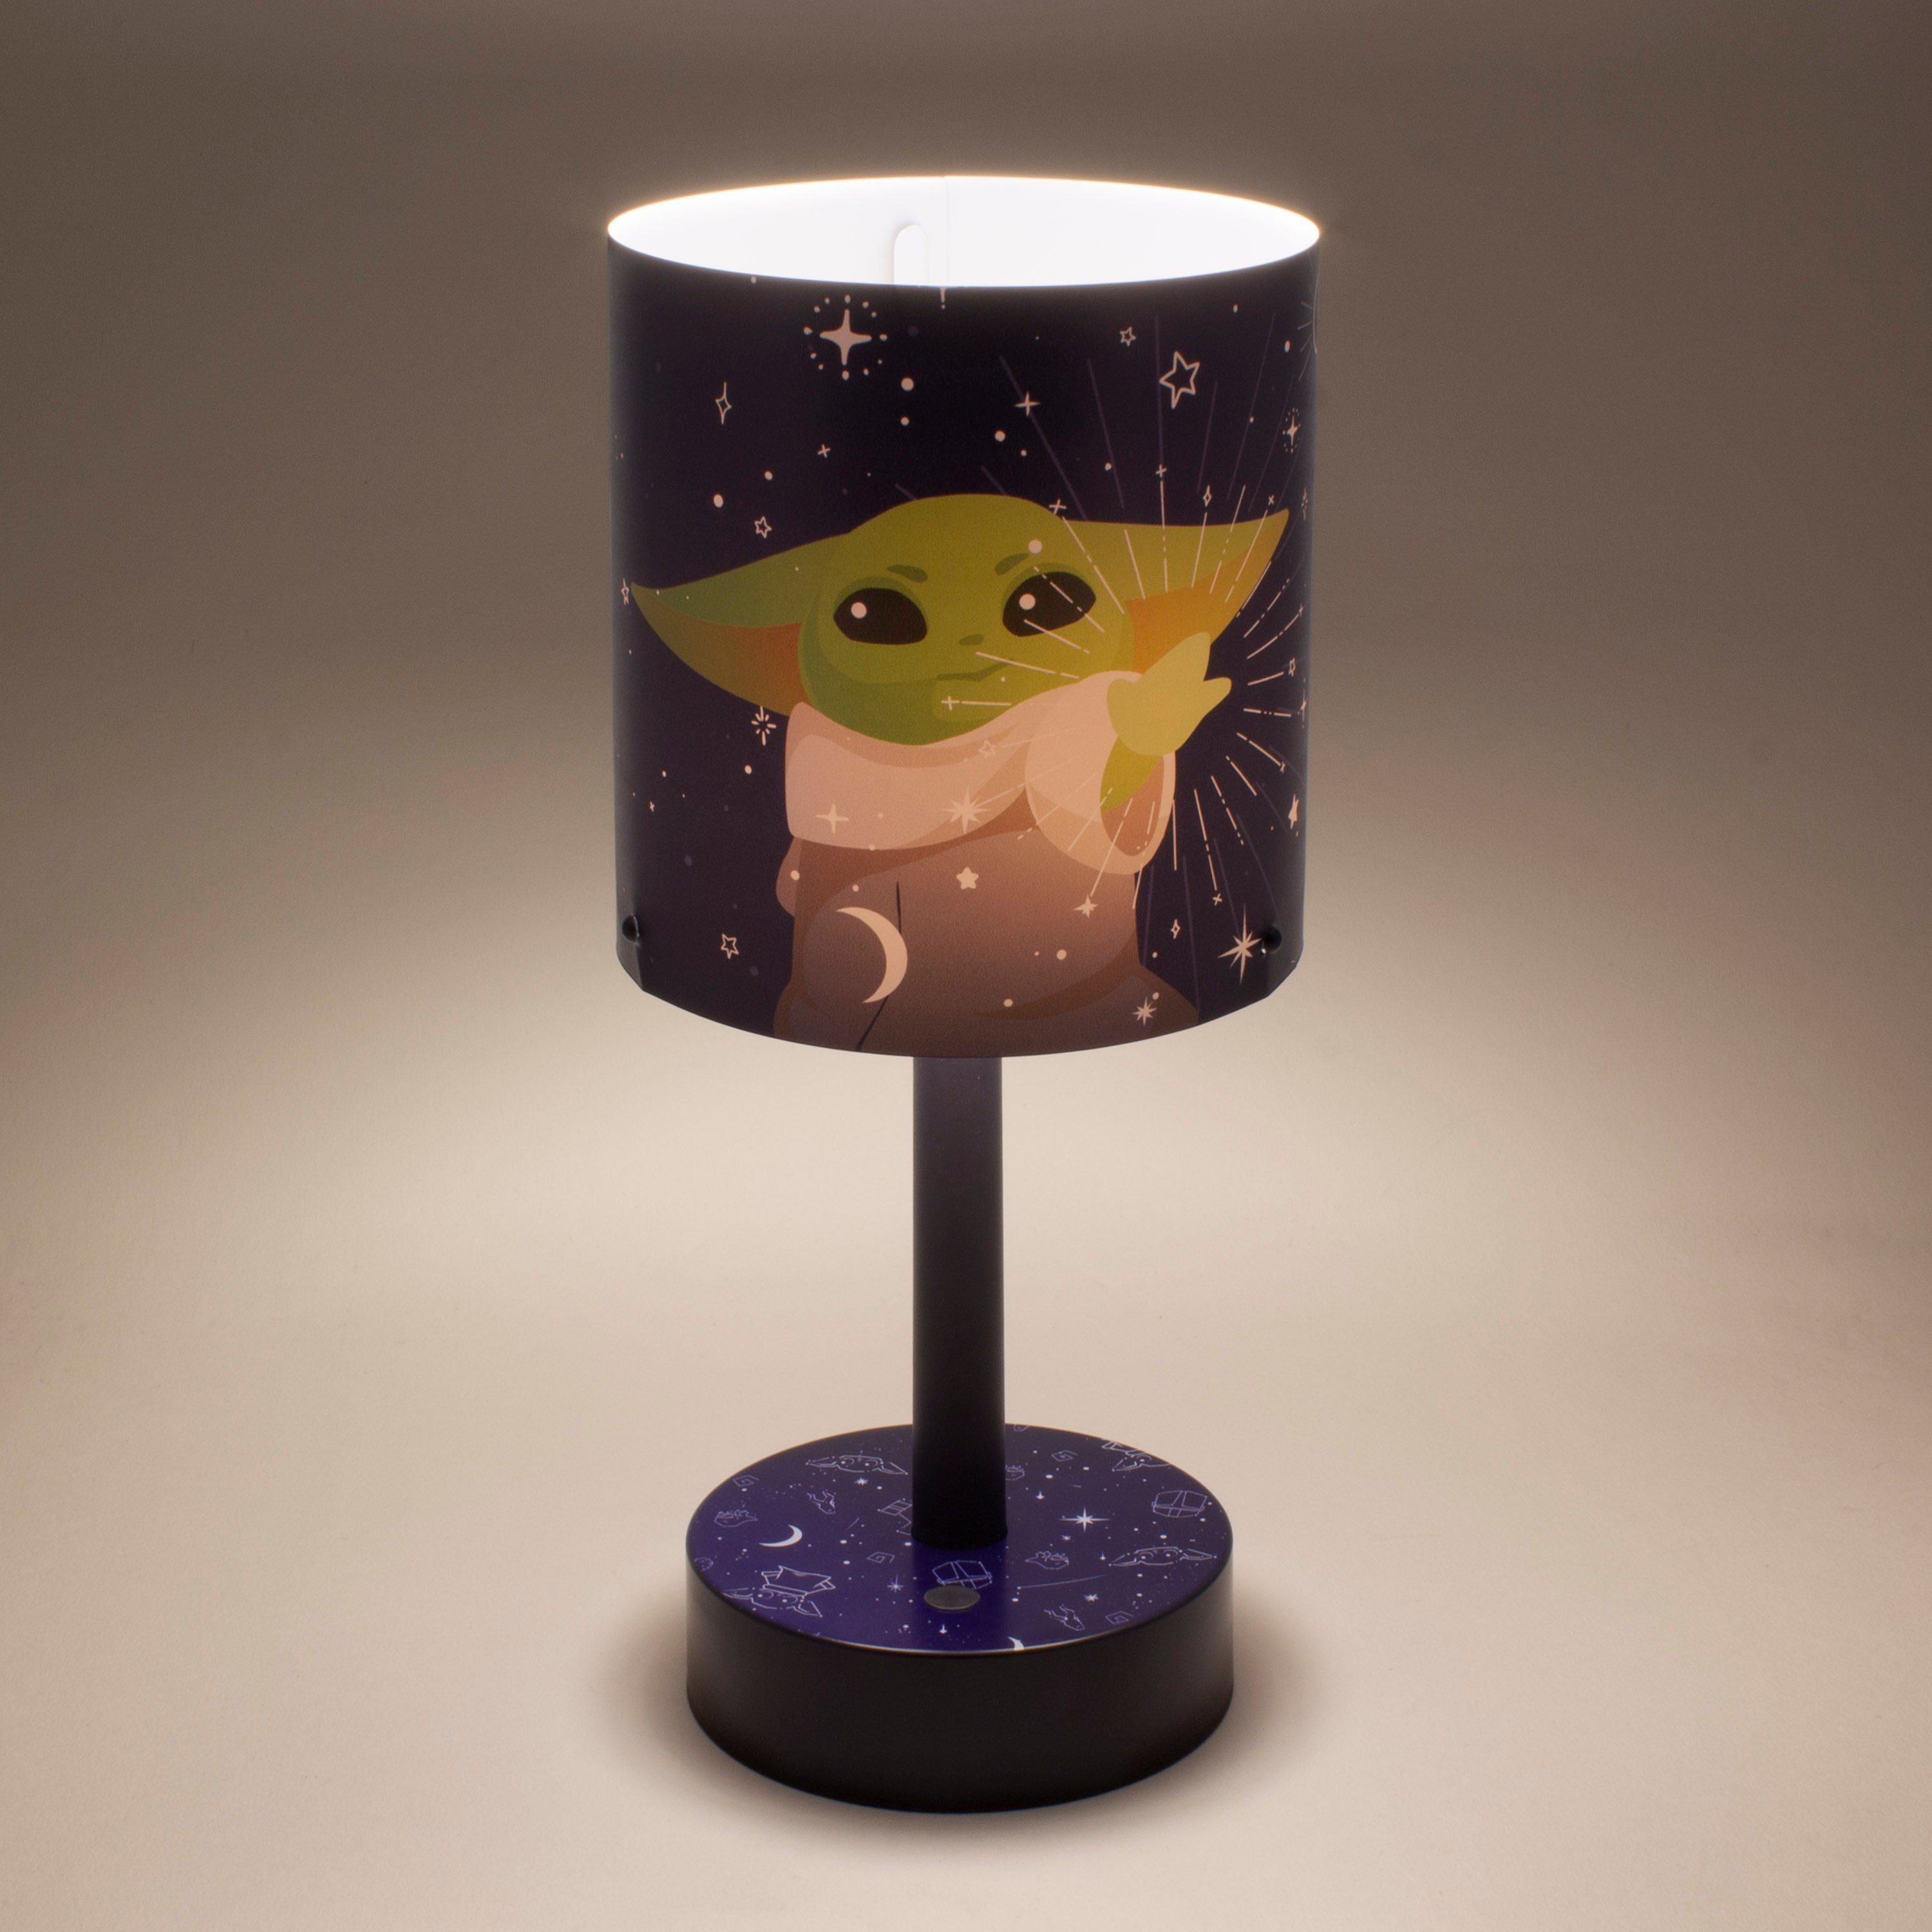 Child Paladone - Dekolicht Grogu The LED Star Mandalorian Mini - Wars:The Schreibtischlampe -